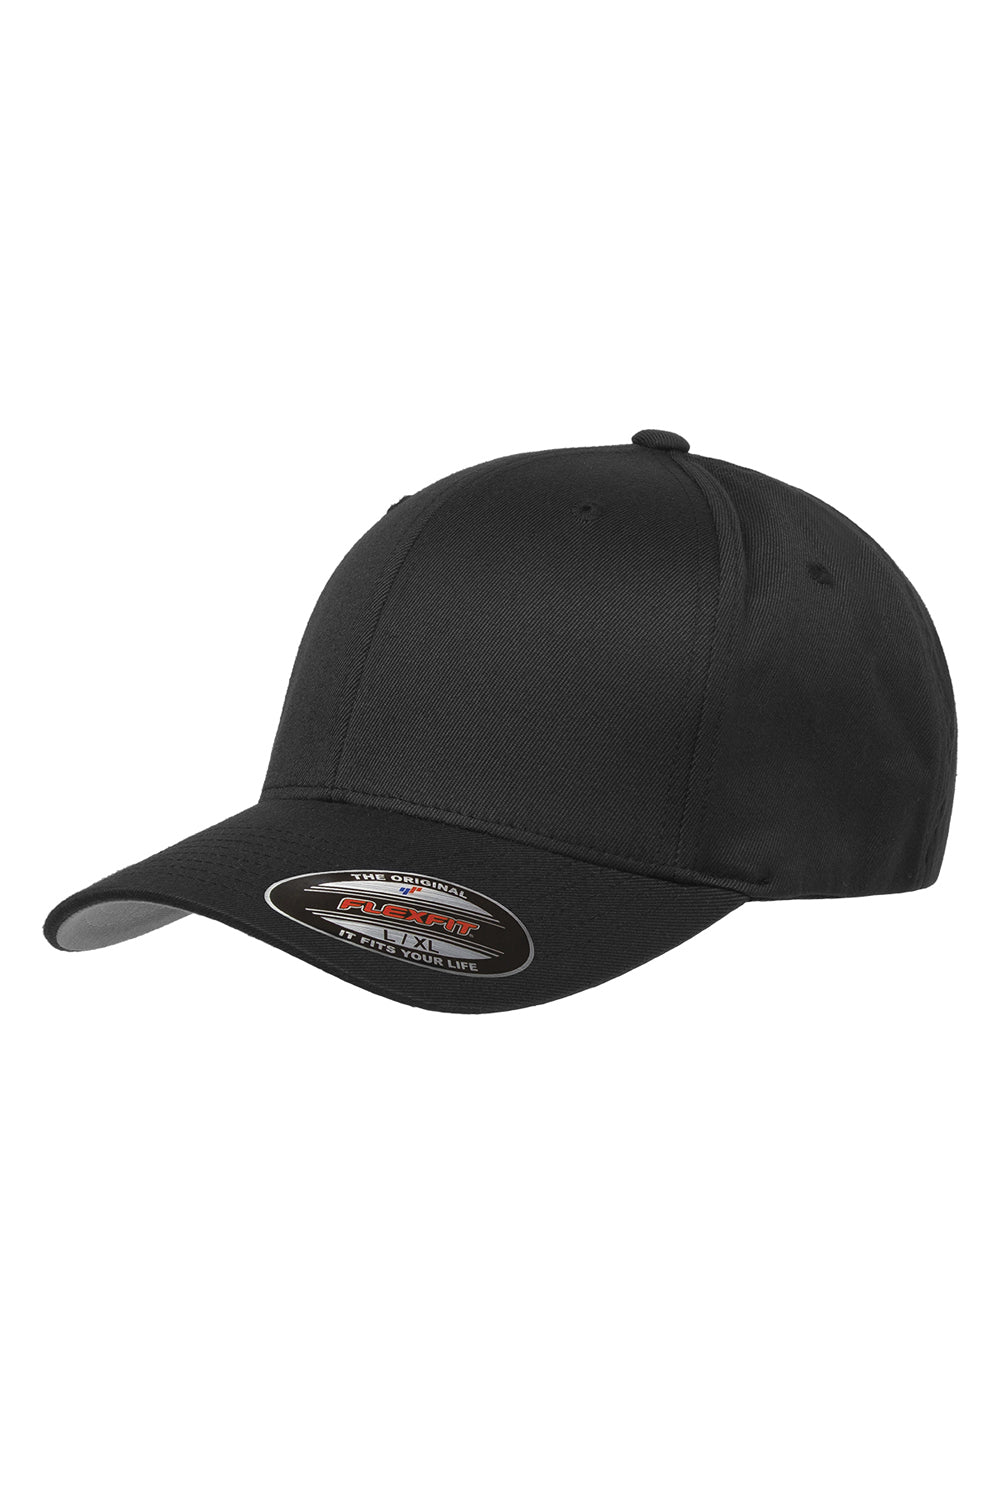 Flexfit 6277 Mens Stretch Fit Hat Black Front